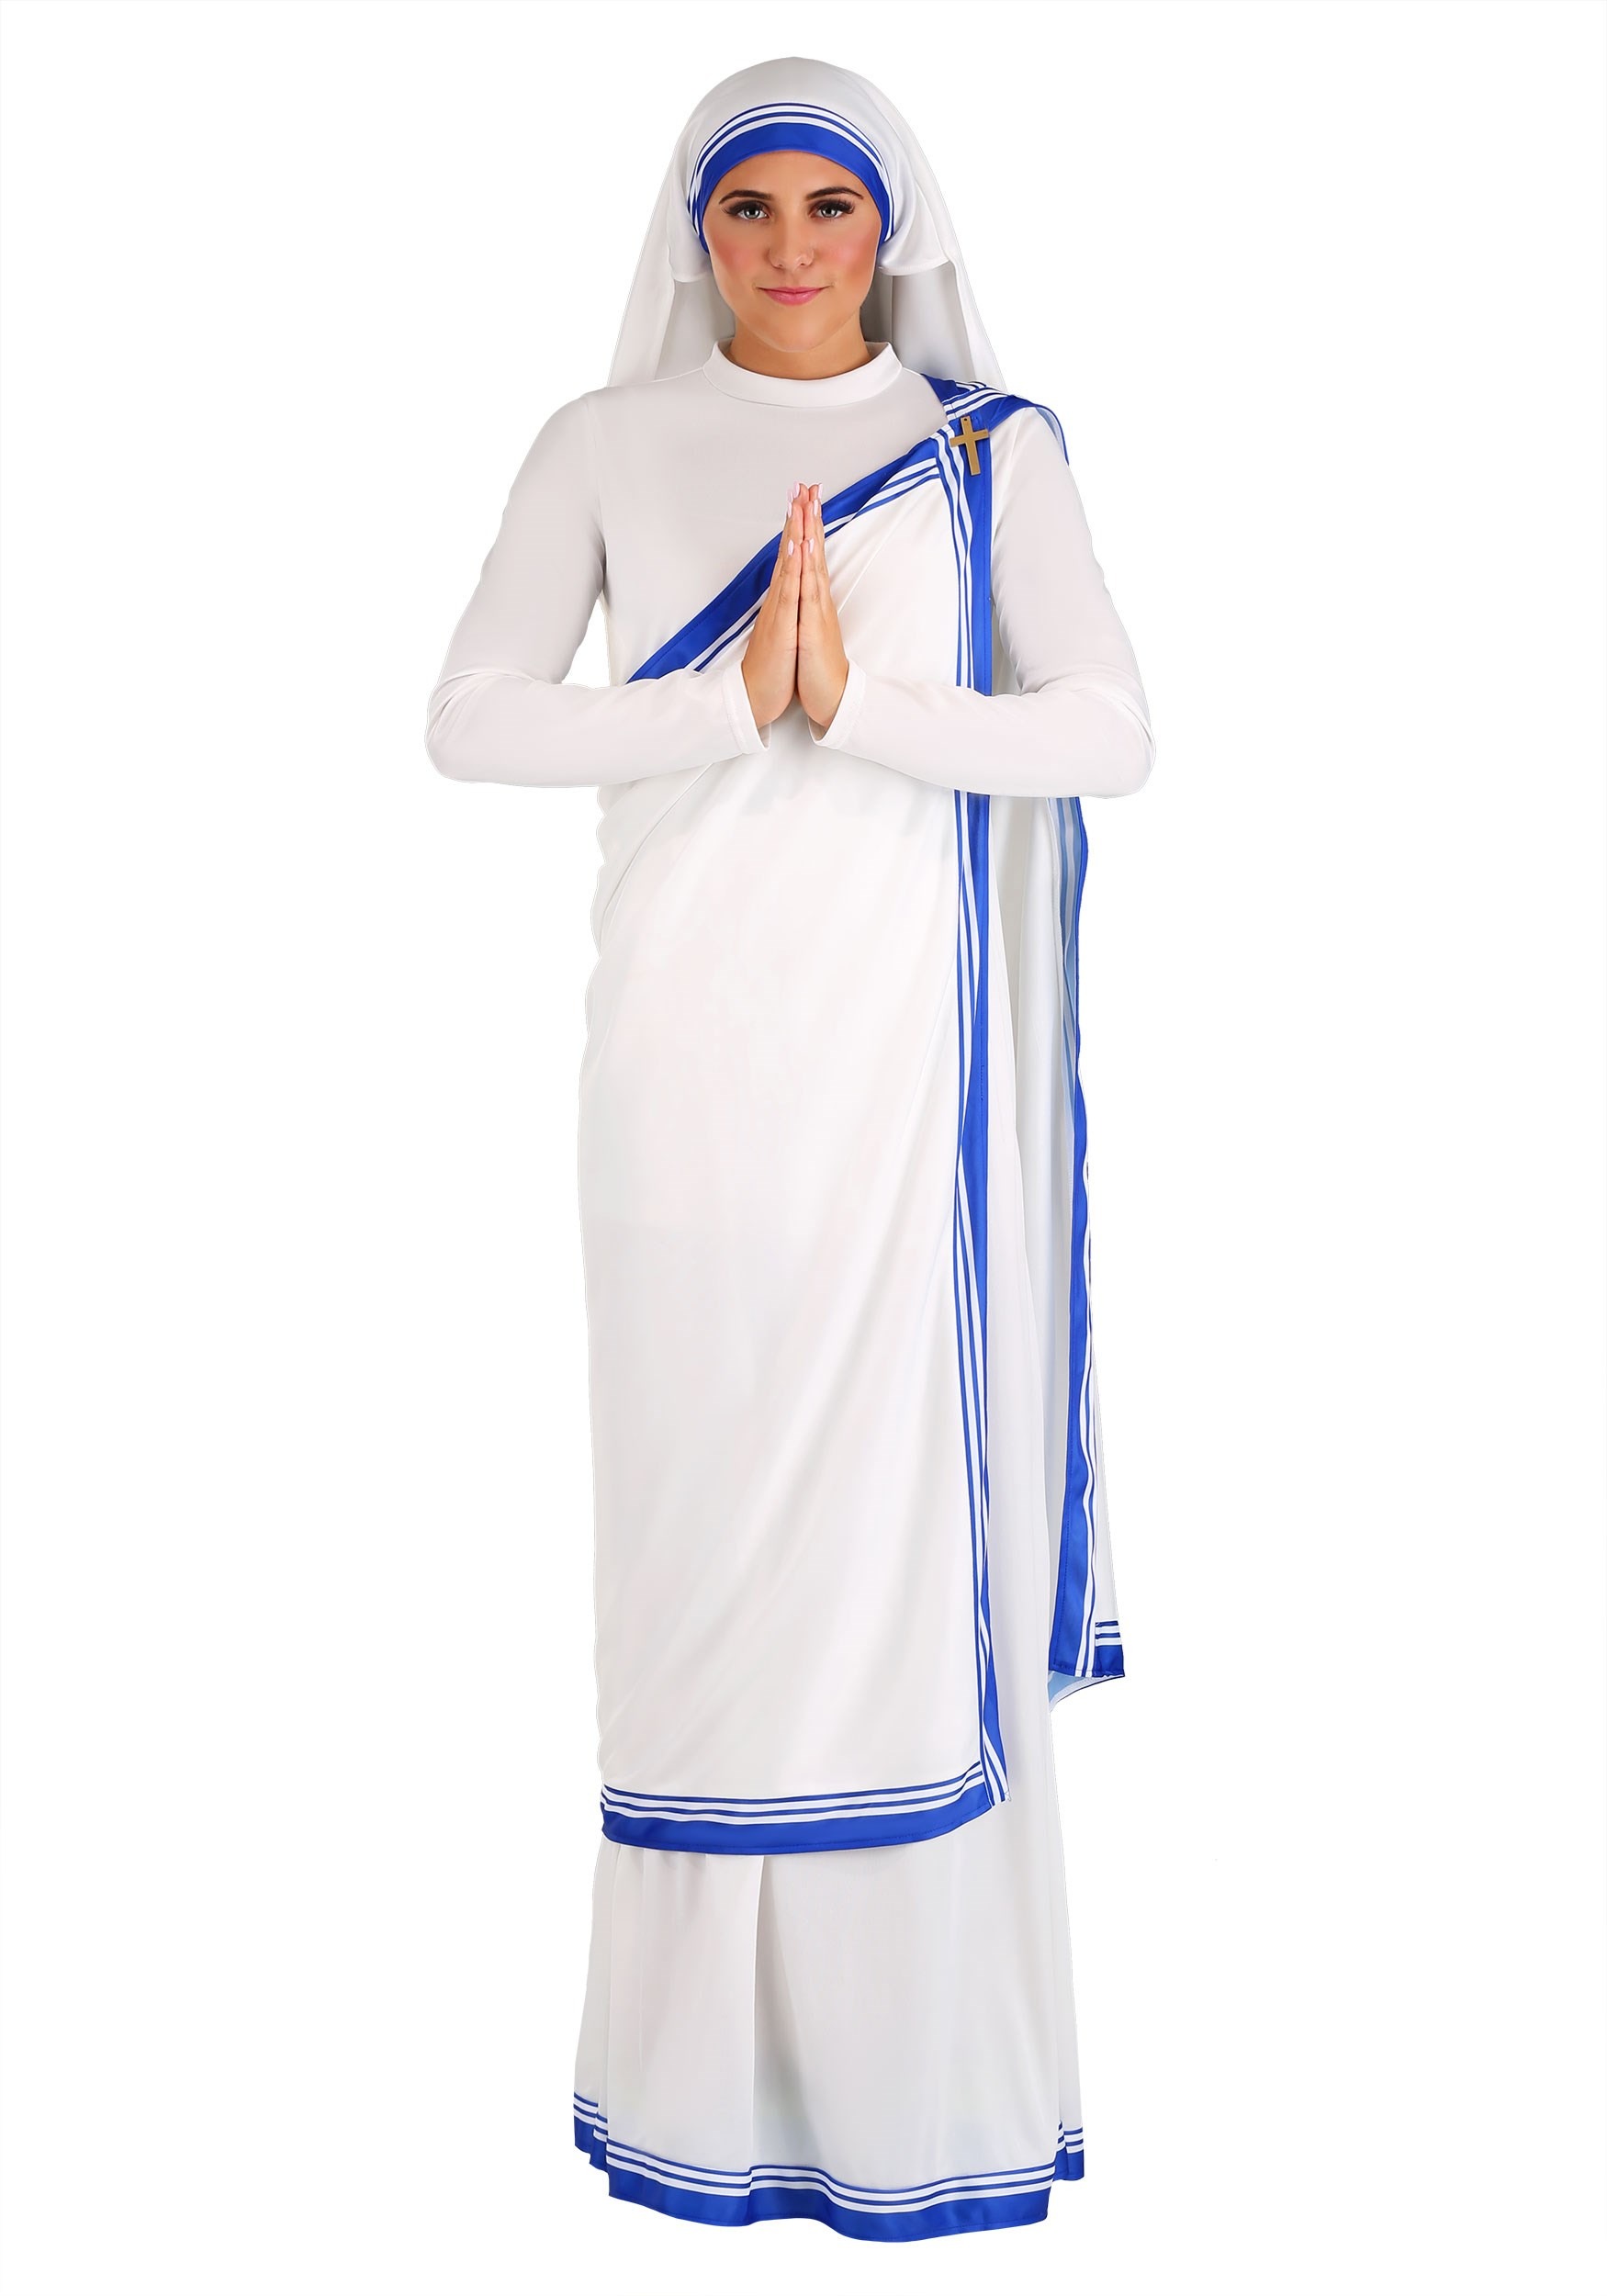 Mother Teresa Costume for Women